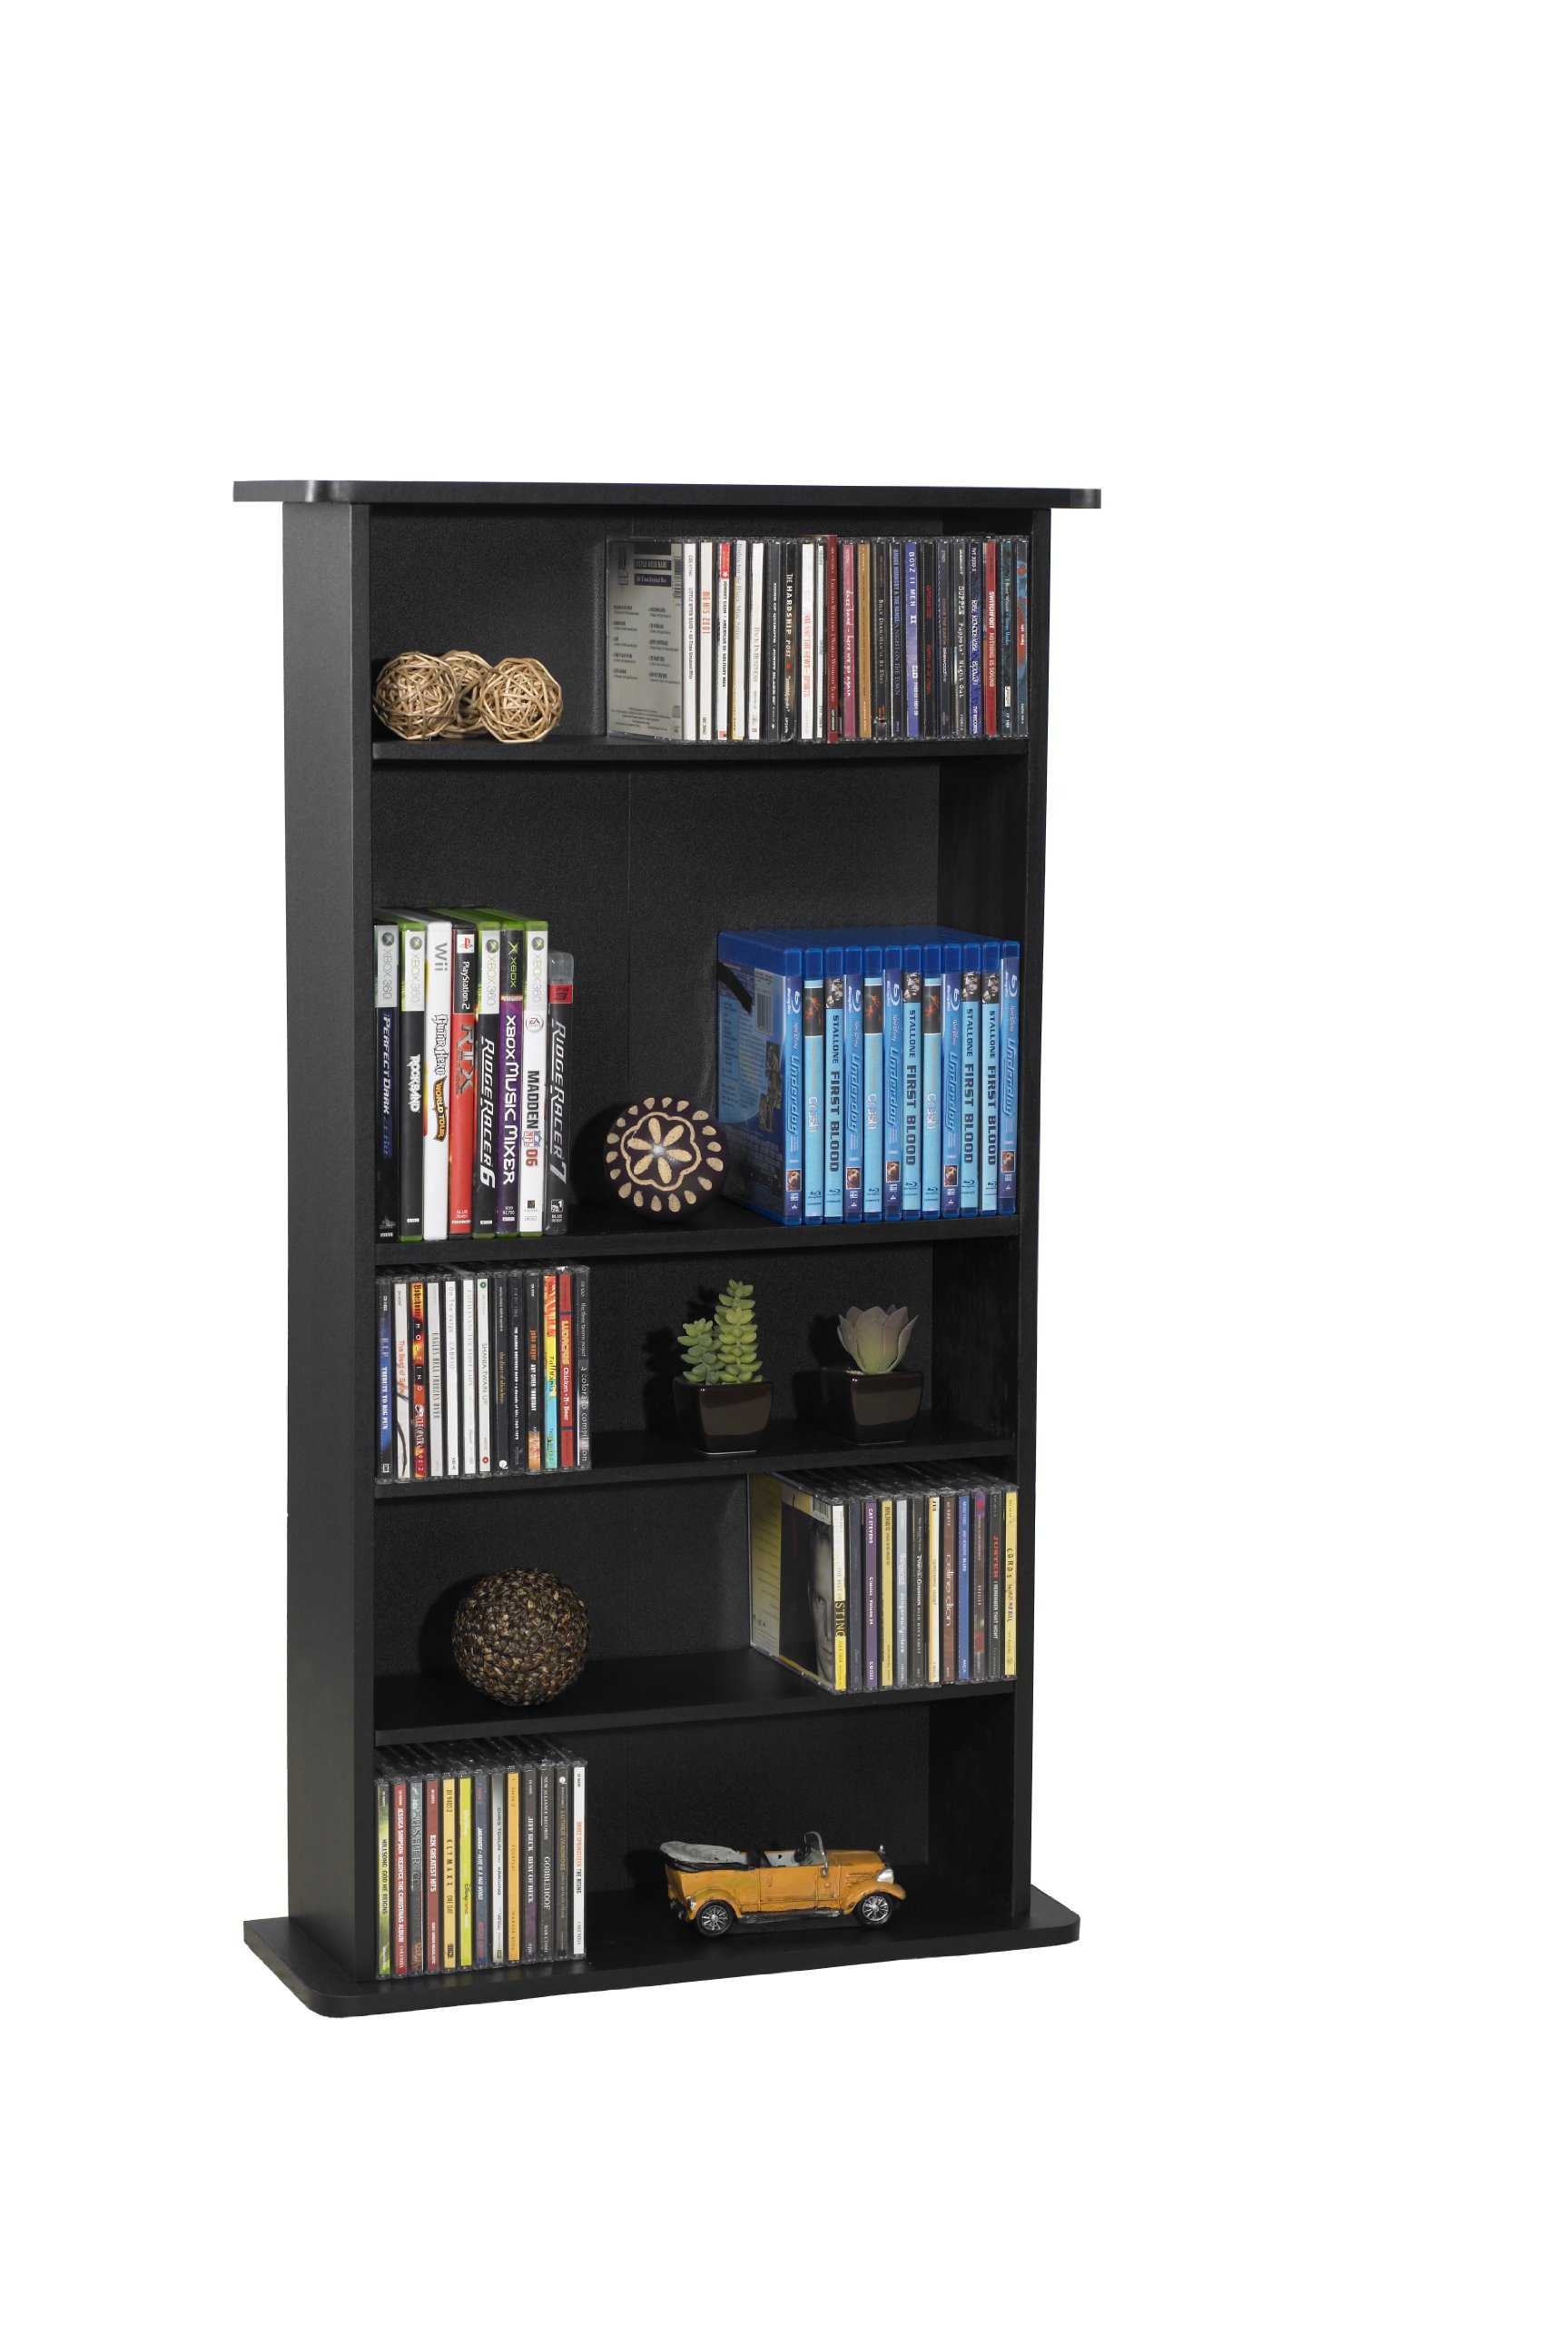 Atlantic Element Media Storage Rack & Drawbridge Media Storage Cabinet,19in.L x 7in.W x 36in.H (48.26cm x 17.78cm x 91.44cm), Black